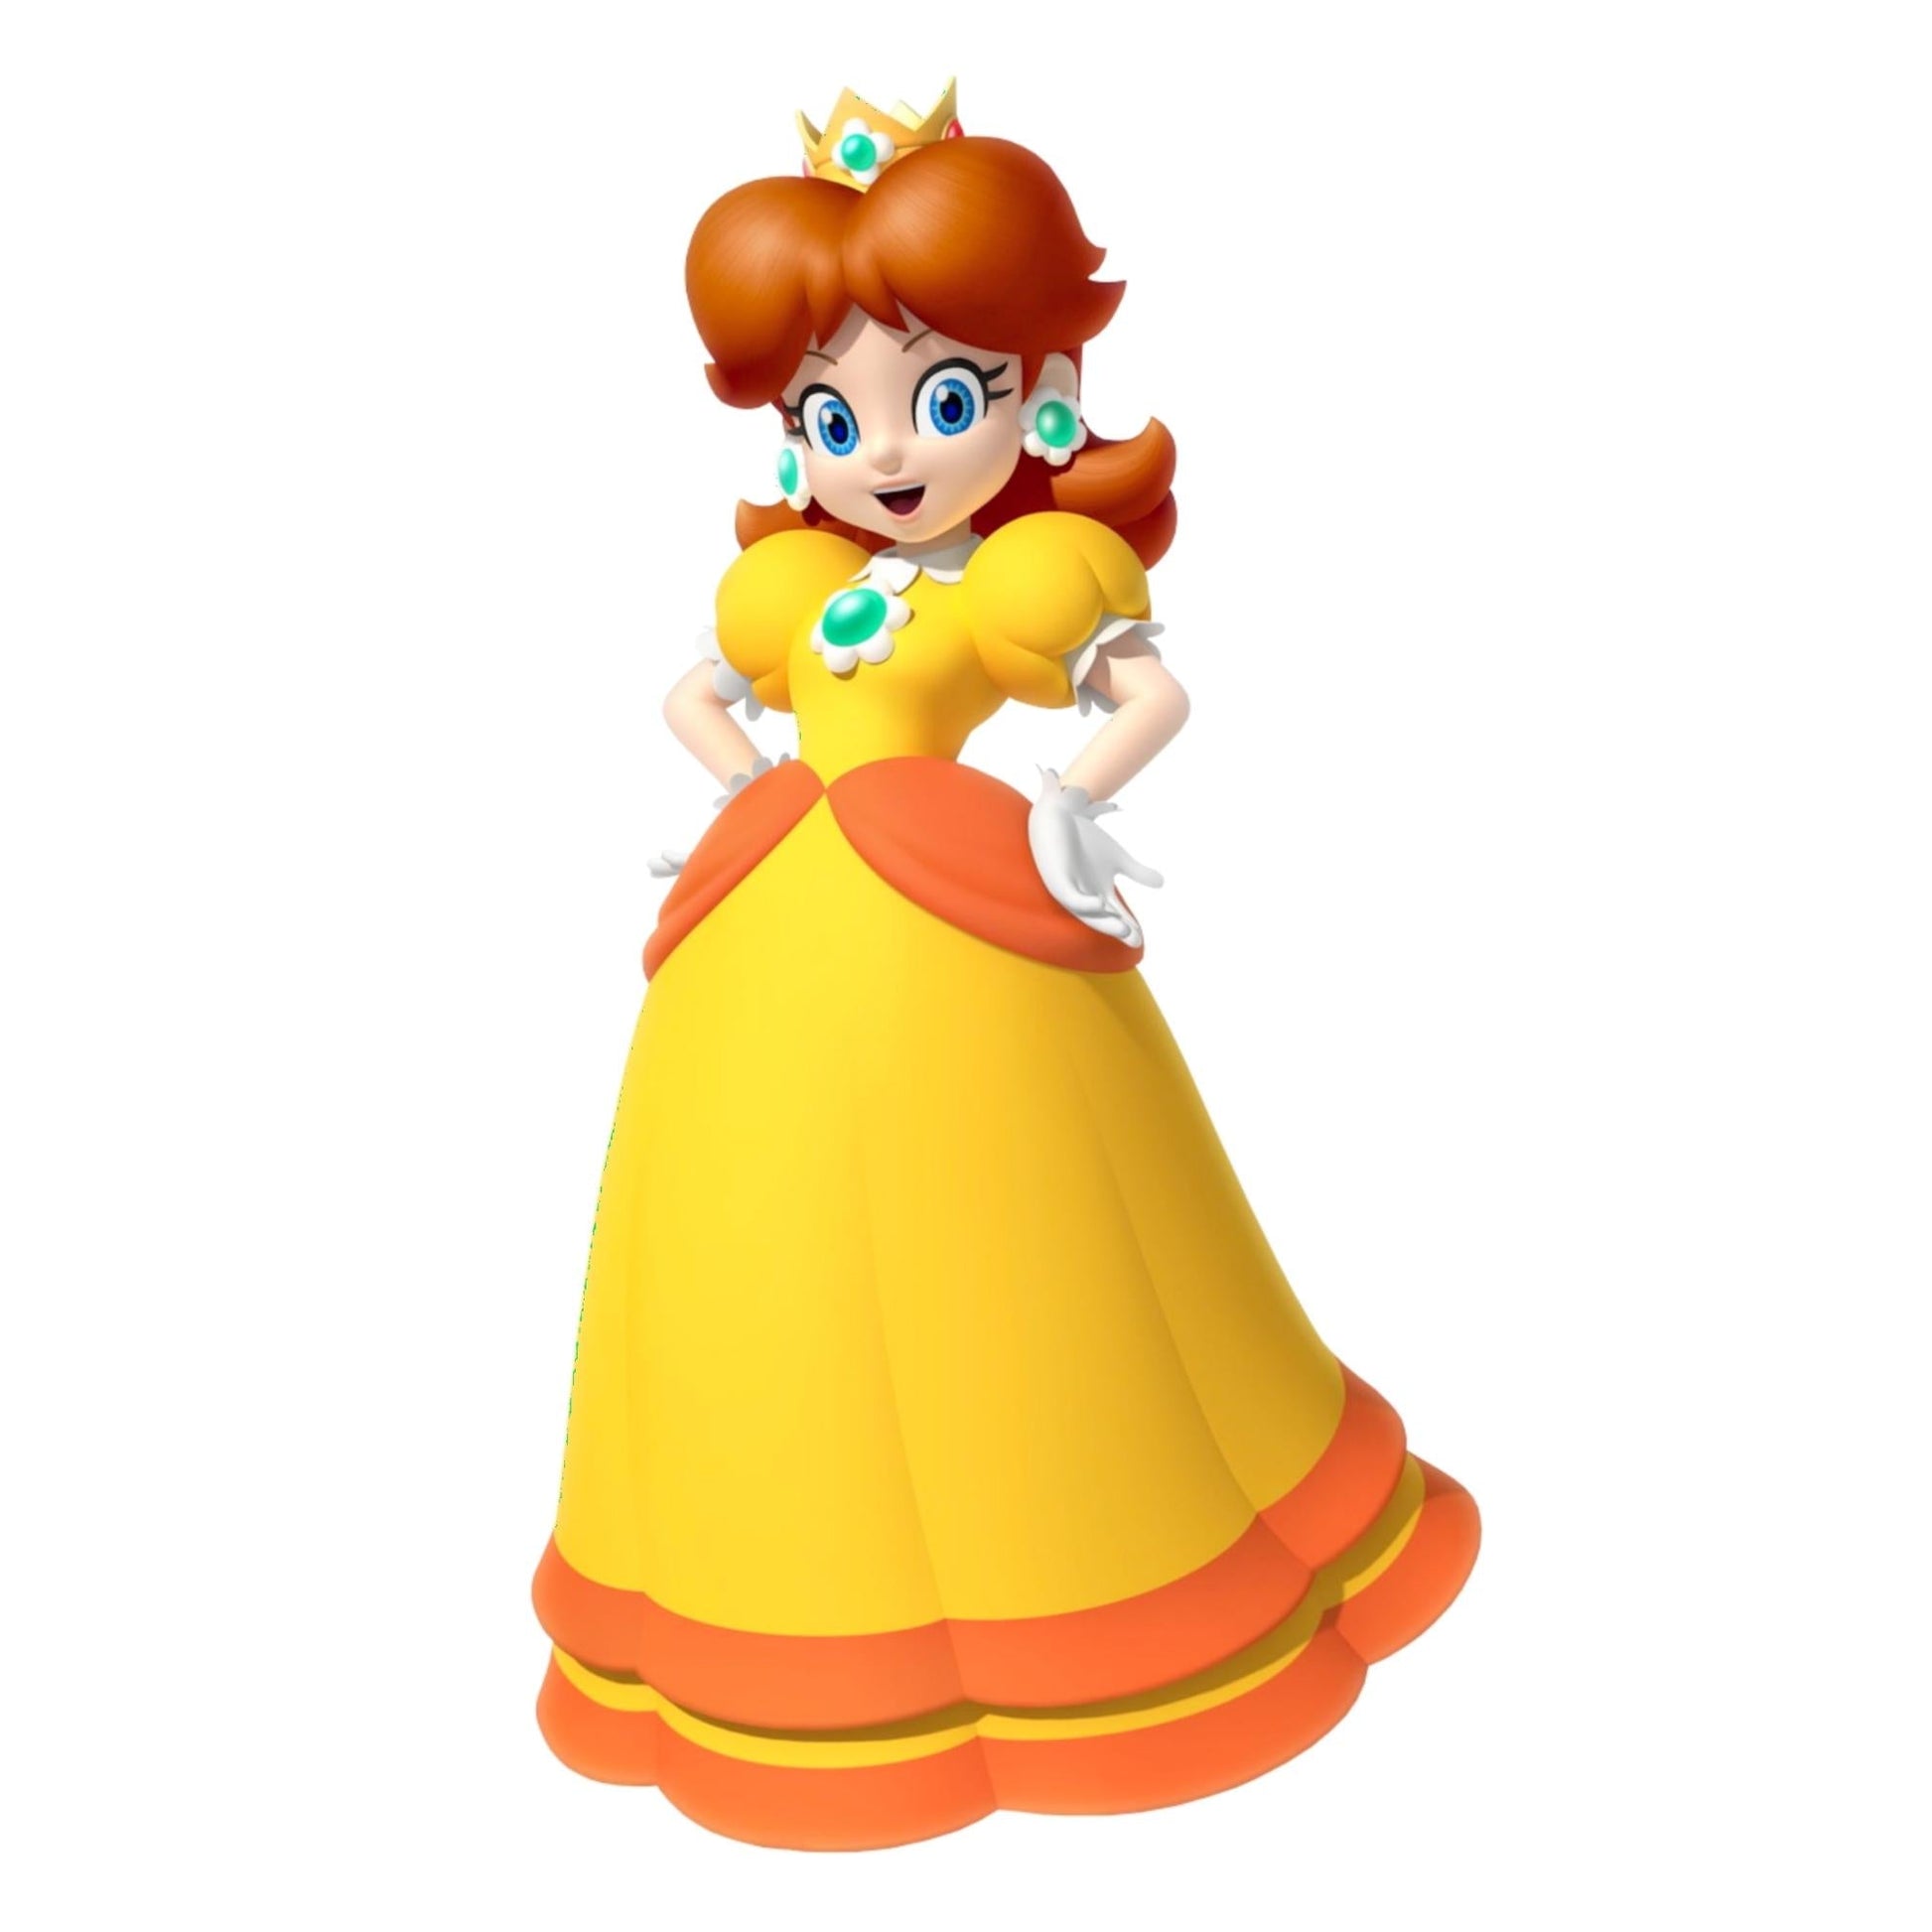 3DPrintProps Princess Daisy Accessories – Crown, Brooch, Earrings from Super Mario Bros Video Game Brooch + Earrings